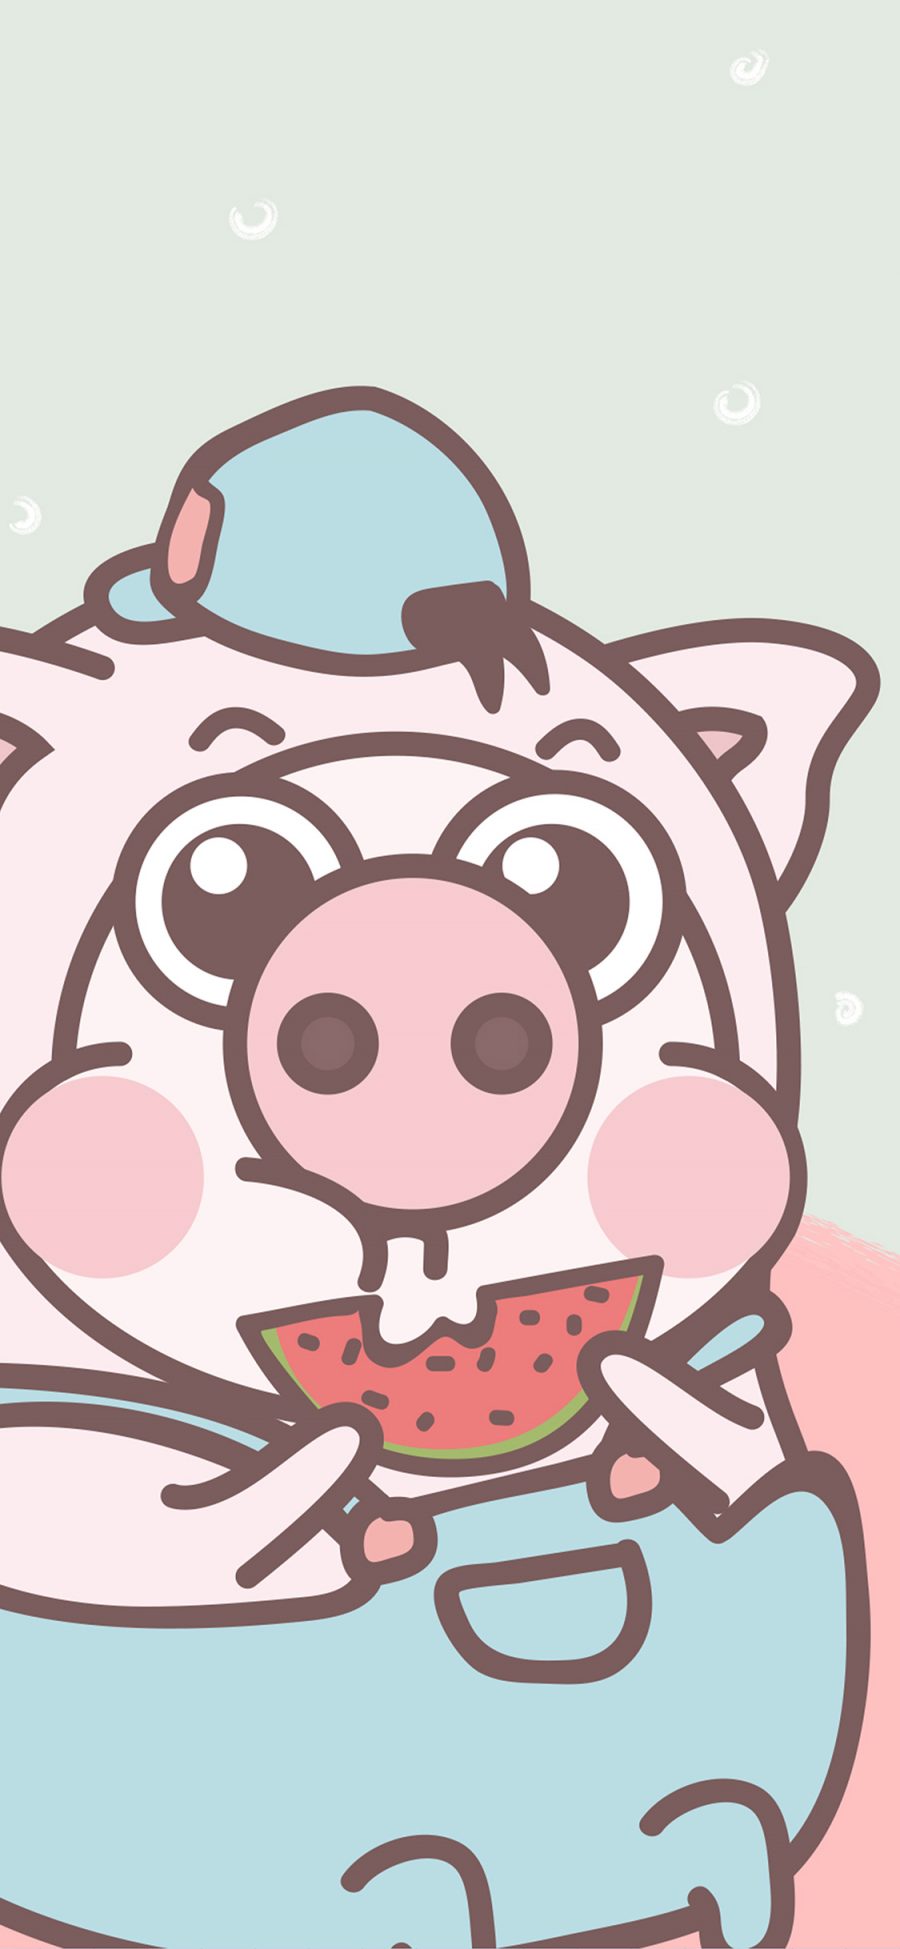 [2436×1125]小恭猪 可爱 吃瓜 卡通 苹果手机动漫壁纸图片